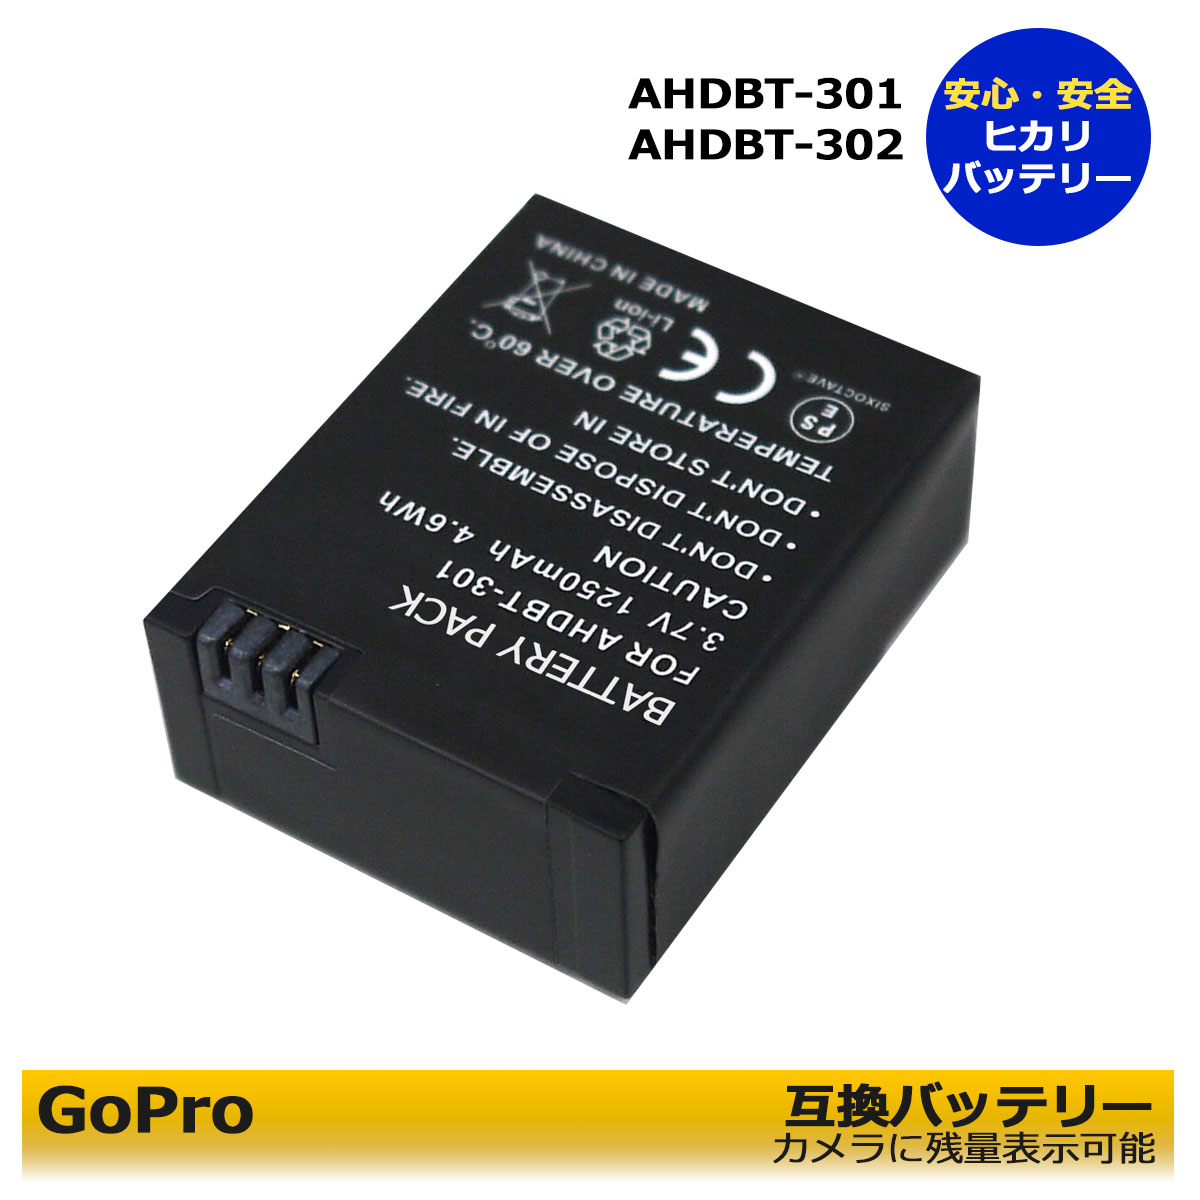 GoPro あす楽対応 ゴープロ AHDBT-201 AHDBT-301 AHDBT-302互換バッテリーパック 対応可能 HERO3+ カメラ本体で残量表示可能 人気 おすすめ HERO3 グレードＡセル使用 年間定番